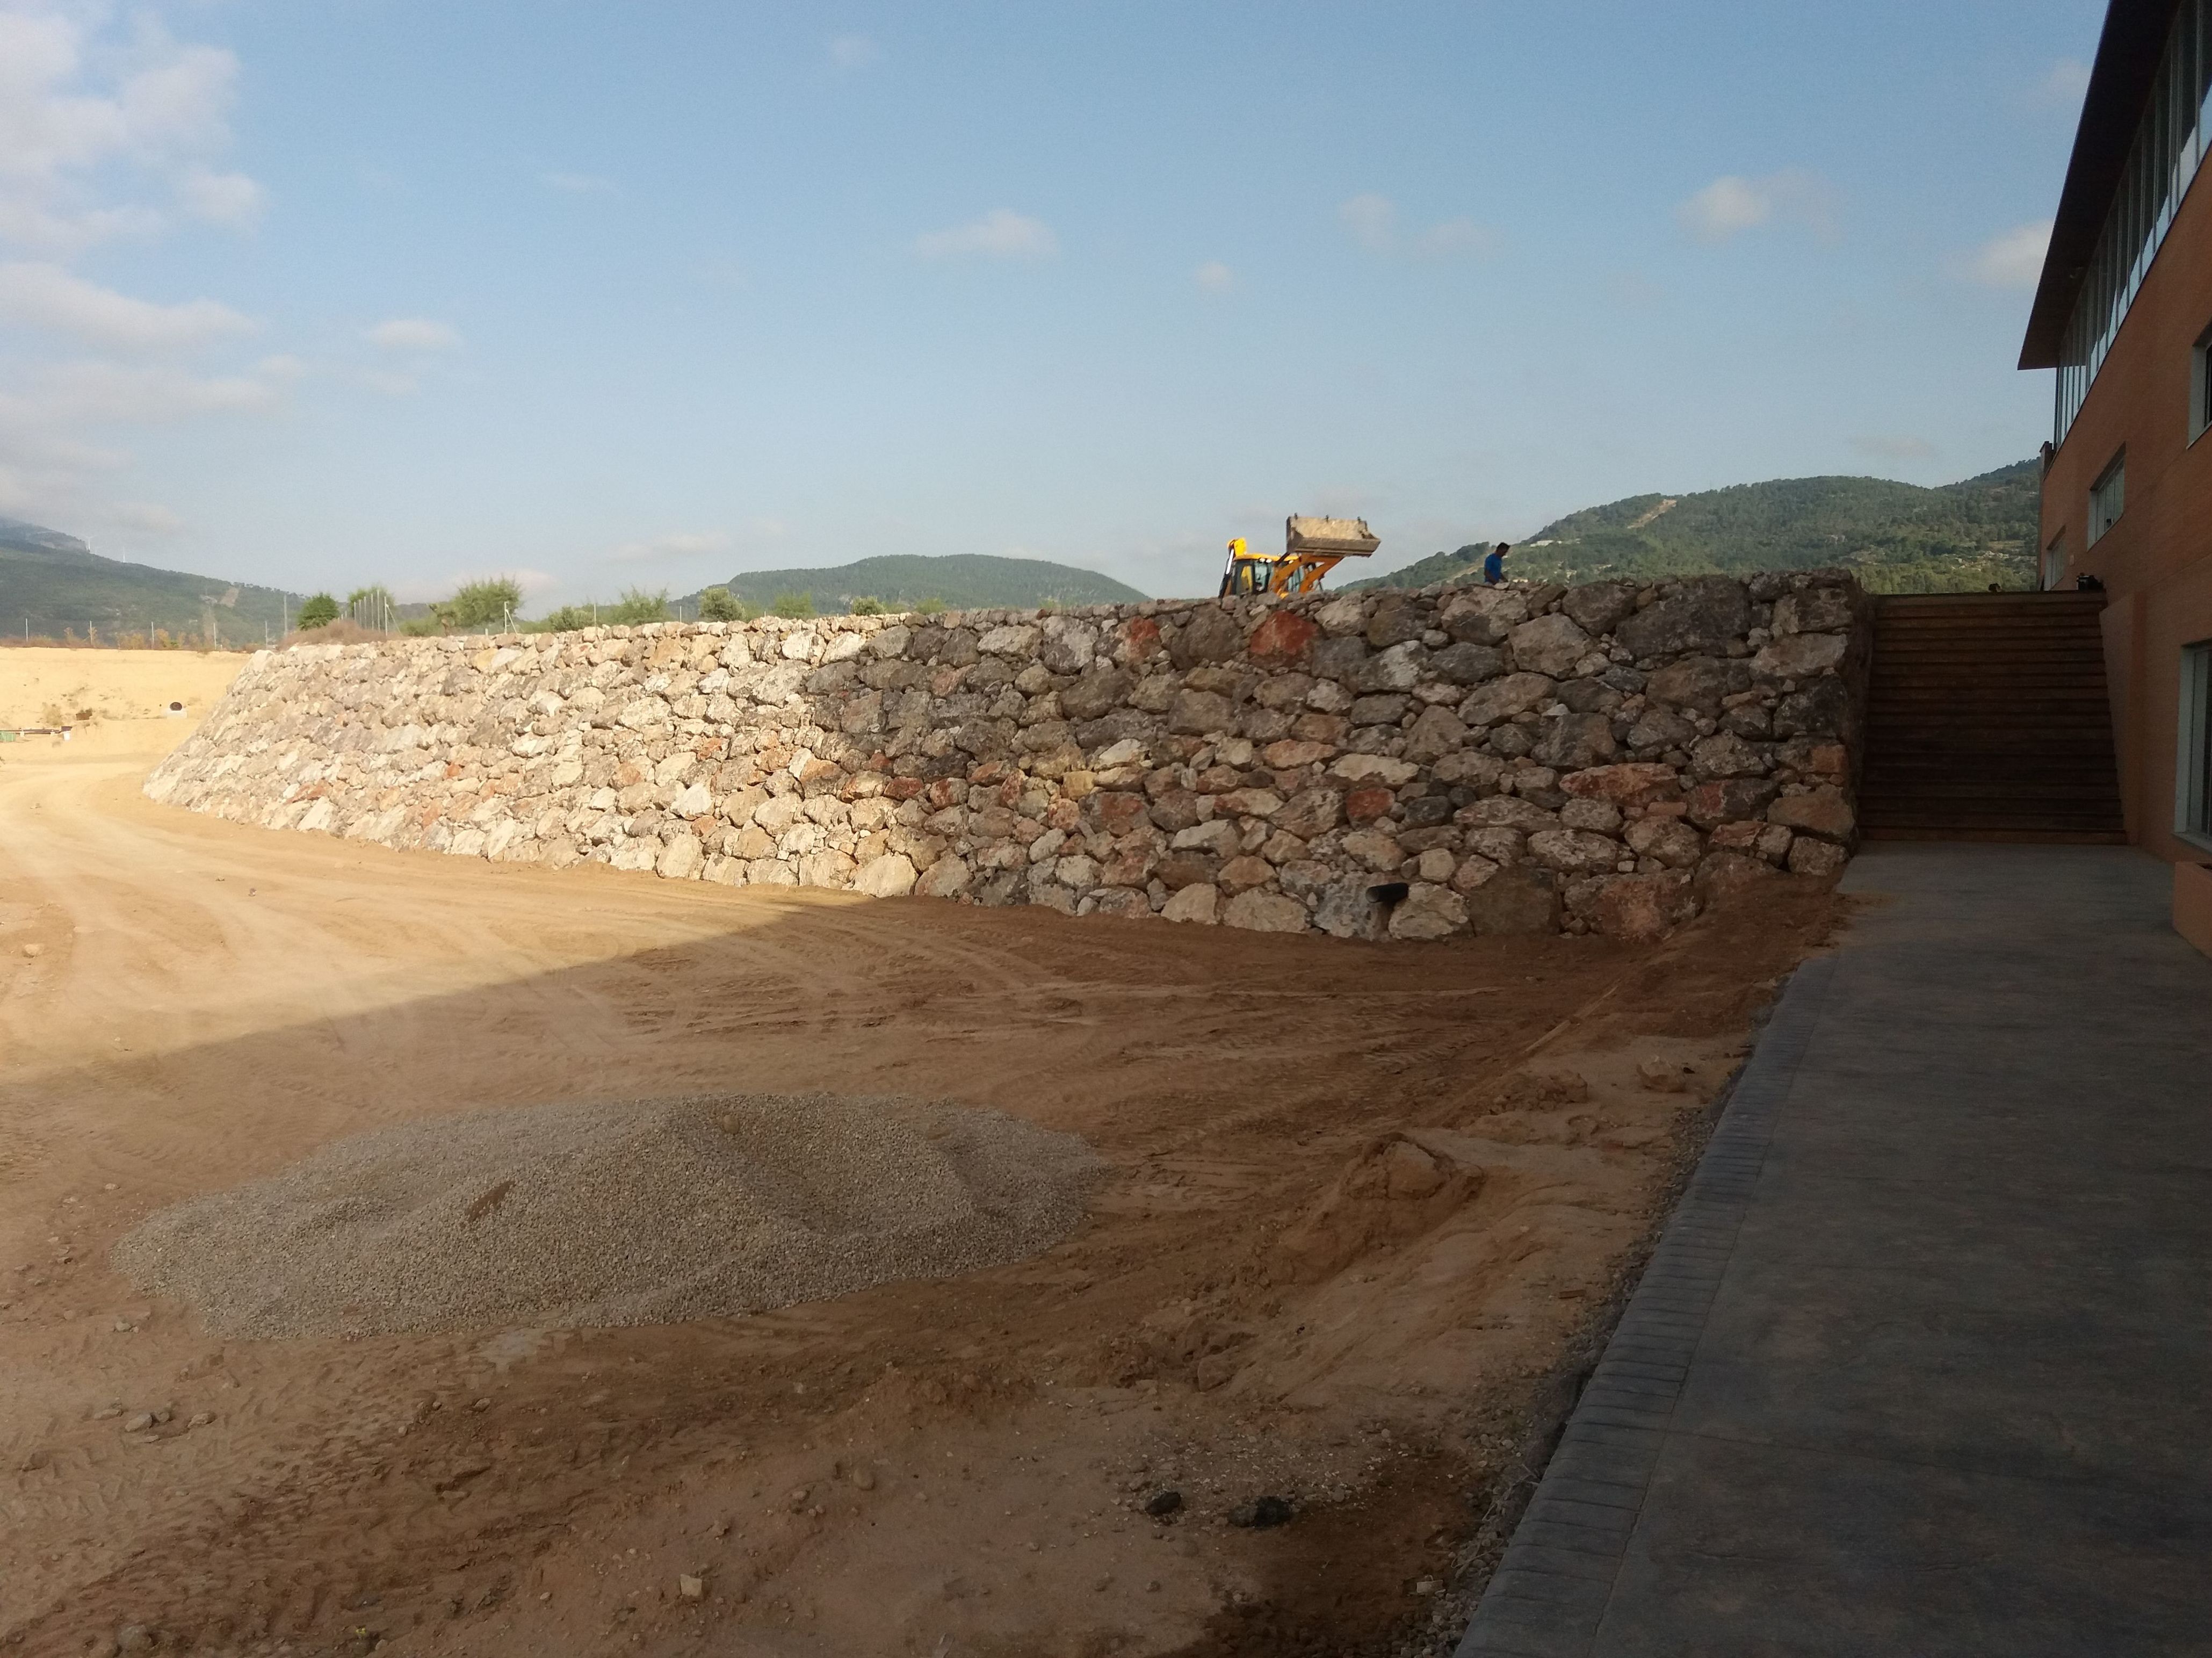 Foto 1 de Excavaciones en Fontanares | Excavaciones Calabuig, S. L.